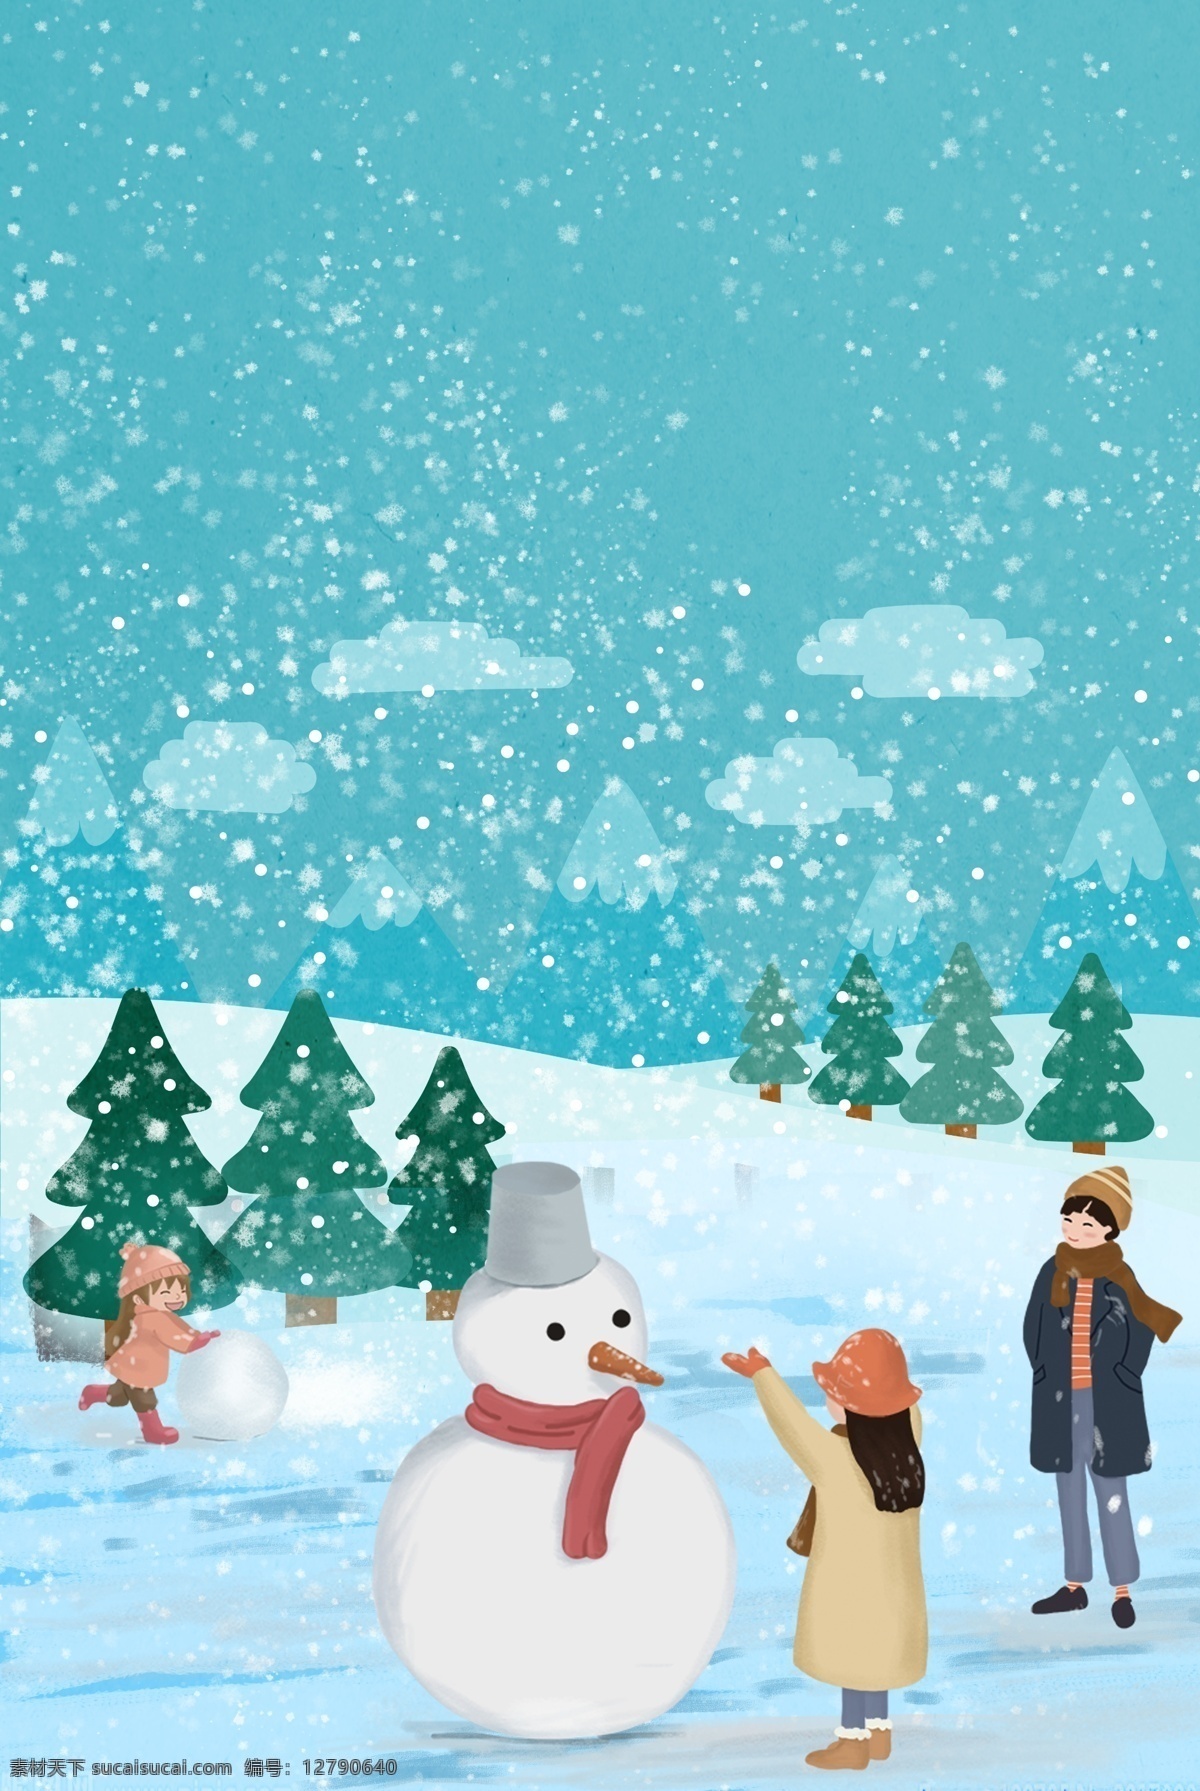 欢乐 雪地 冬令营 海报 冬季雪地 雪地海报 冬季营地 冬天 大雪 雪中 滚雪球 堆雪人